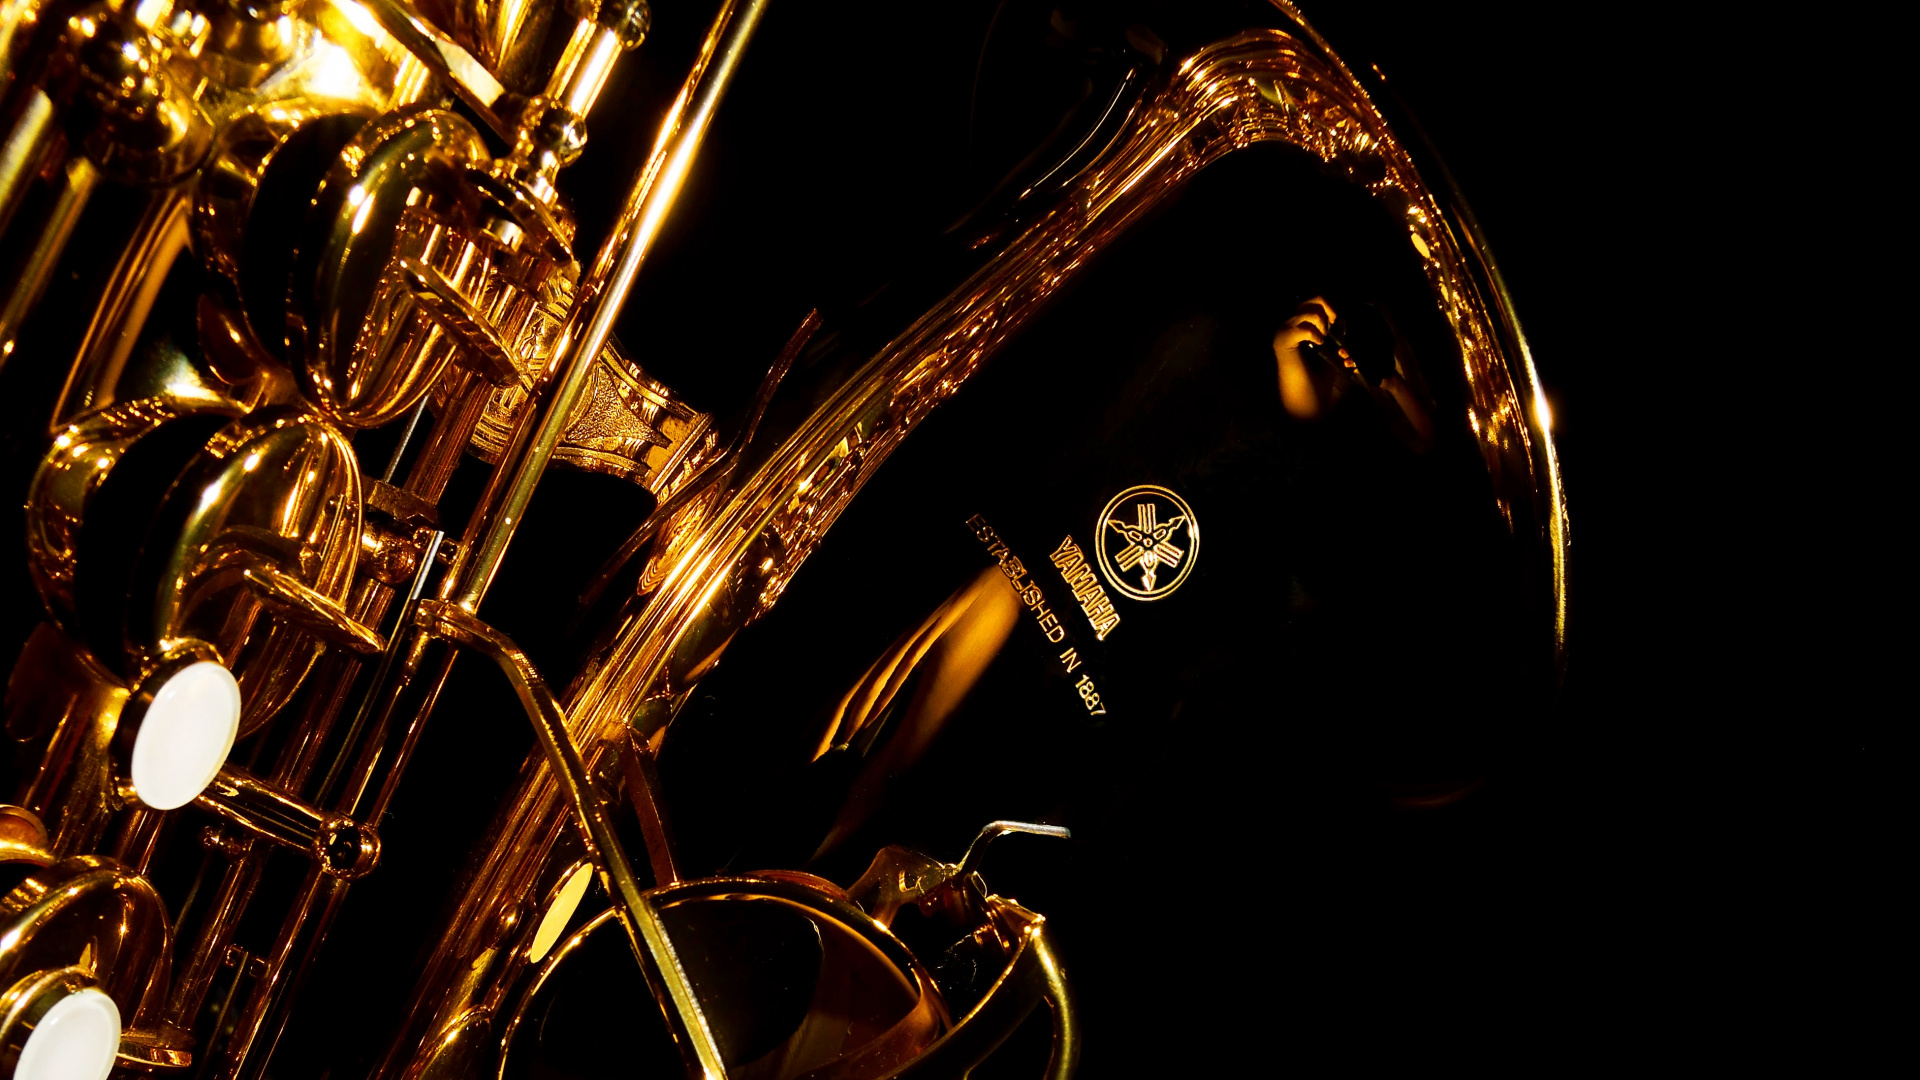 Trompette, Saxophone, Instrument de Cuivre, Instrument à Vent, Instrument de Musique. Wallpaper in 1920x1080 Resolution